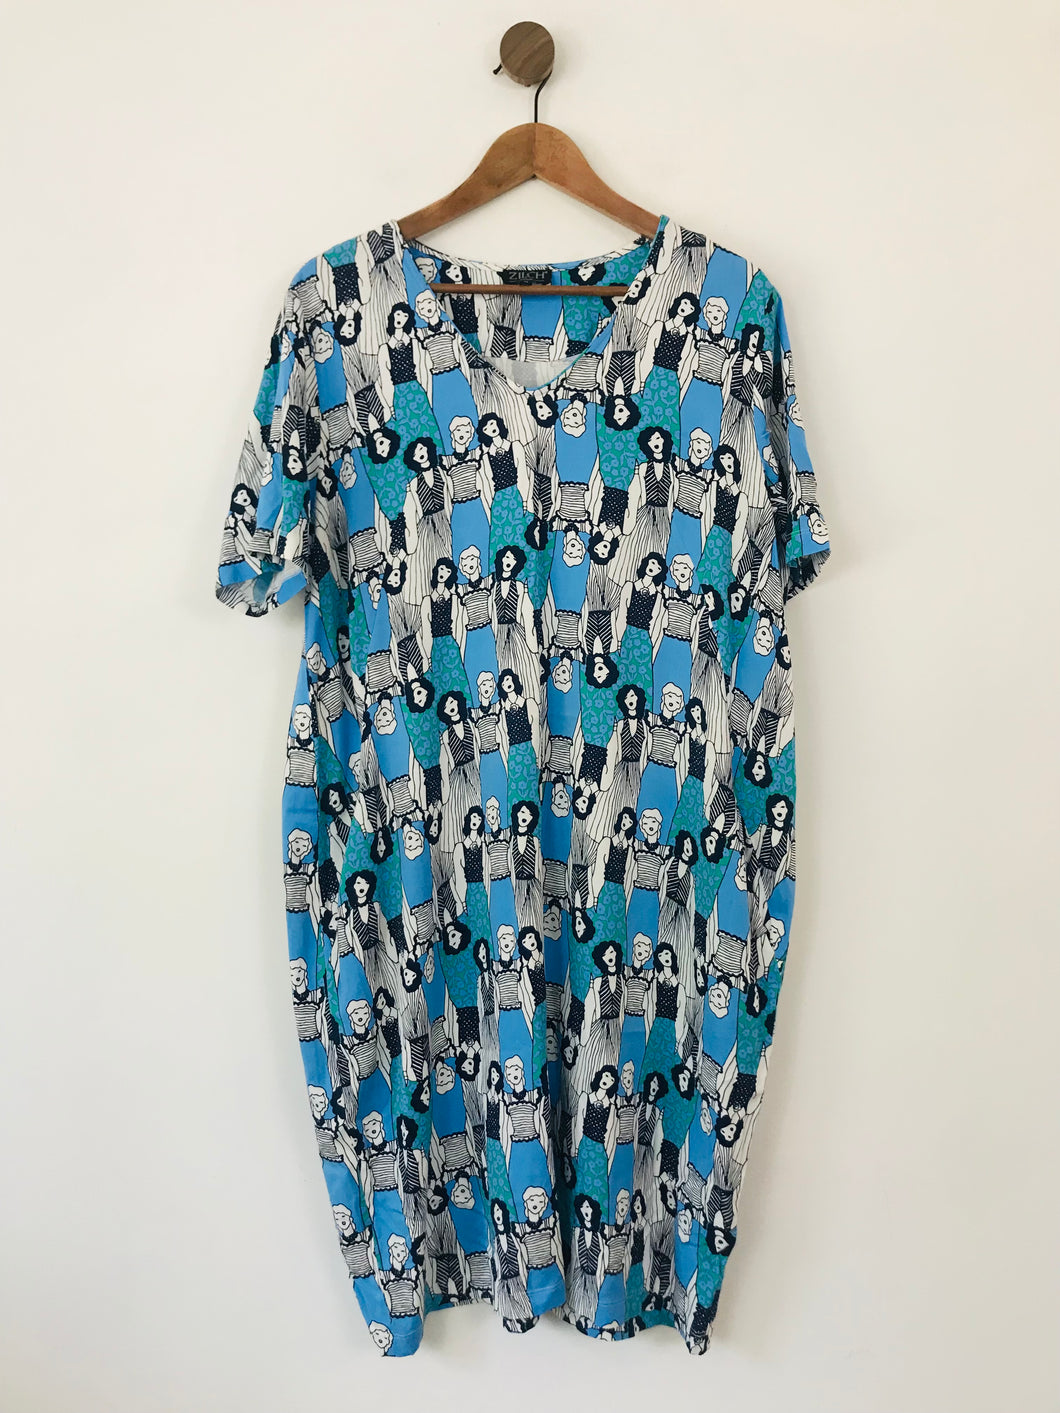 Zilch Amsterdam Women's Patterned Shift Dress | XL UK16-18 | Blue